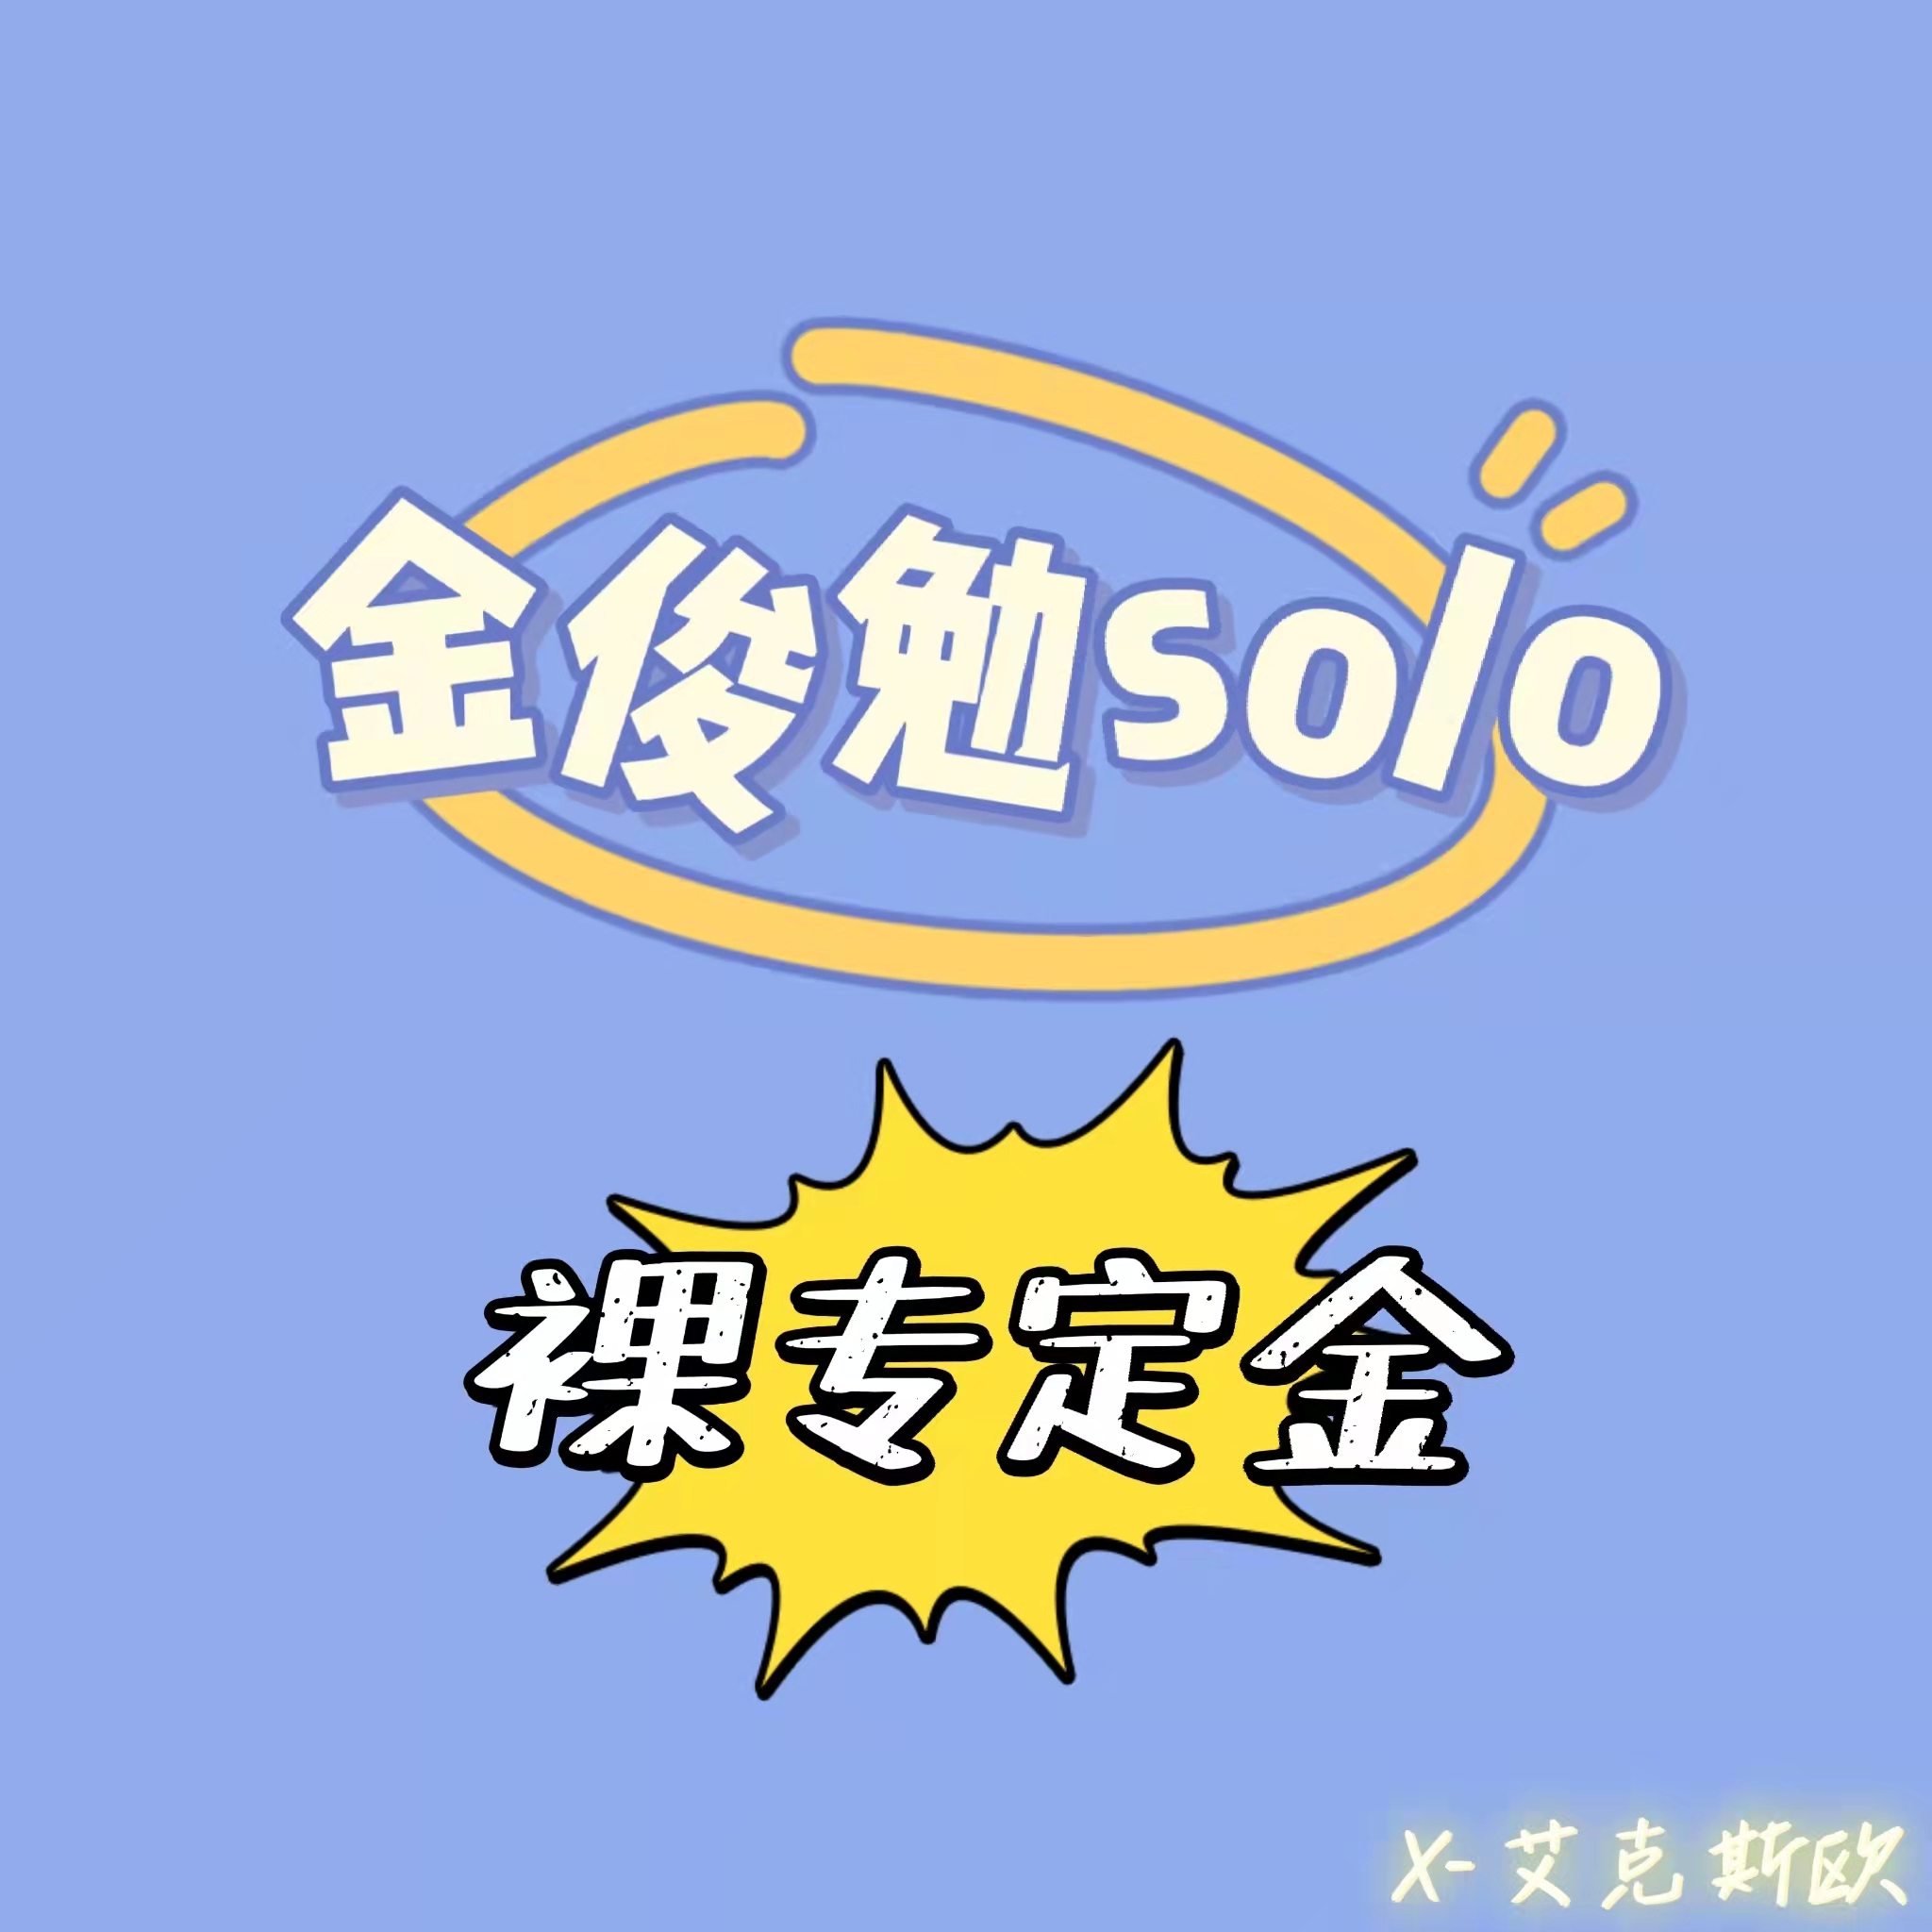 [定金 裸专] EXO SUHO金俊勉 SOLO回归新专定金_X-艾克斯欧吧